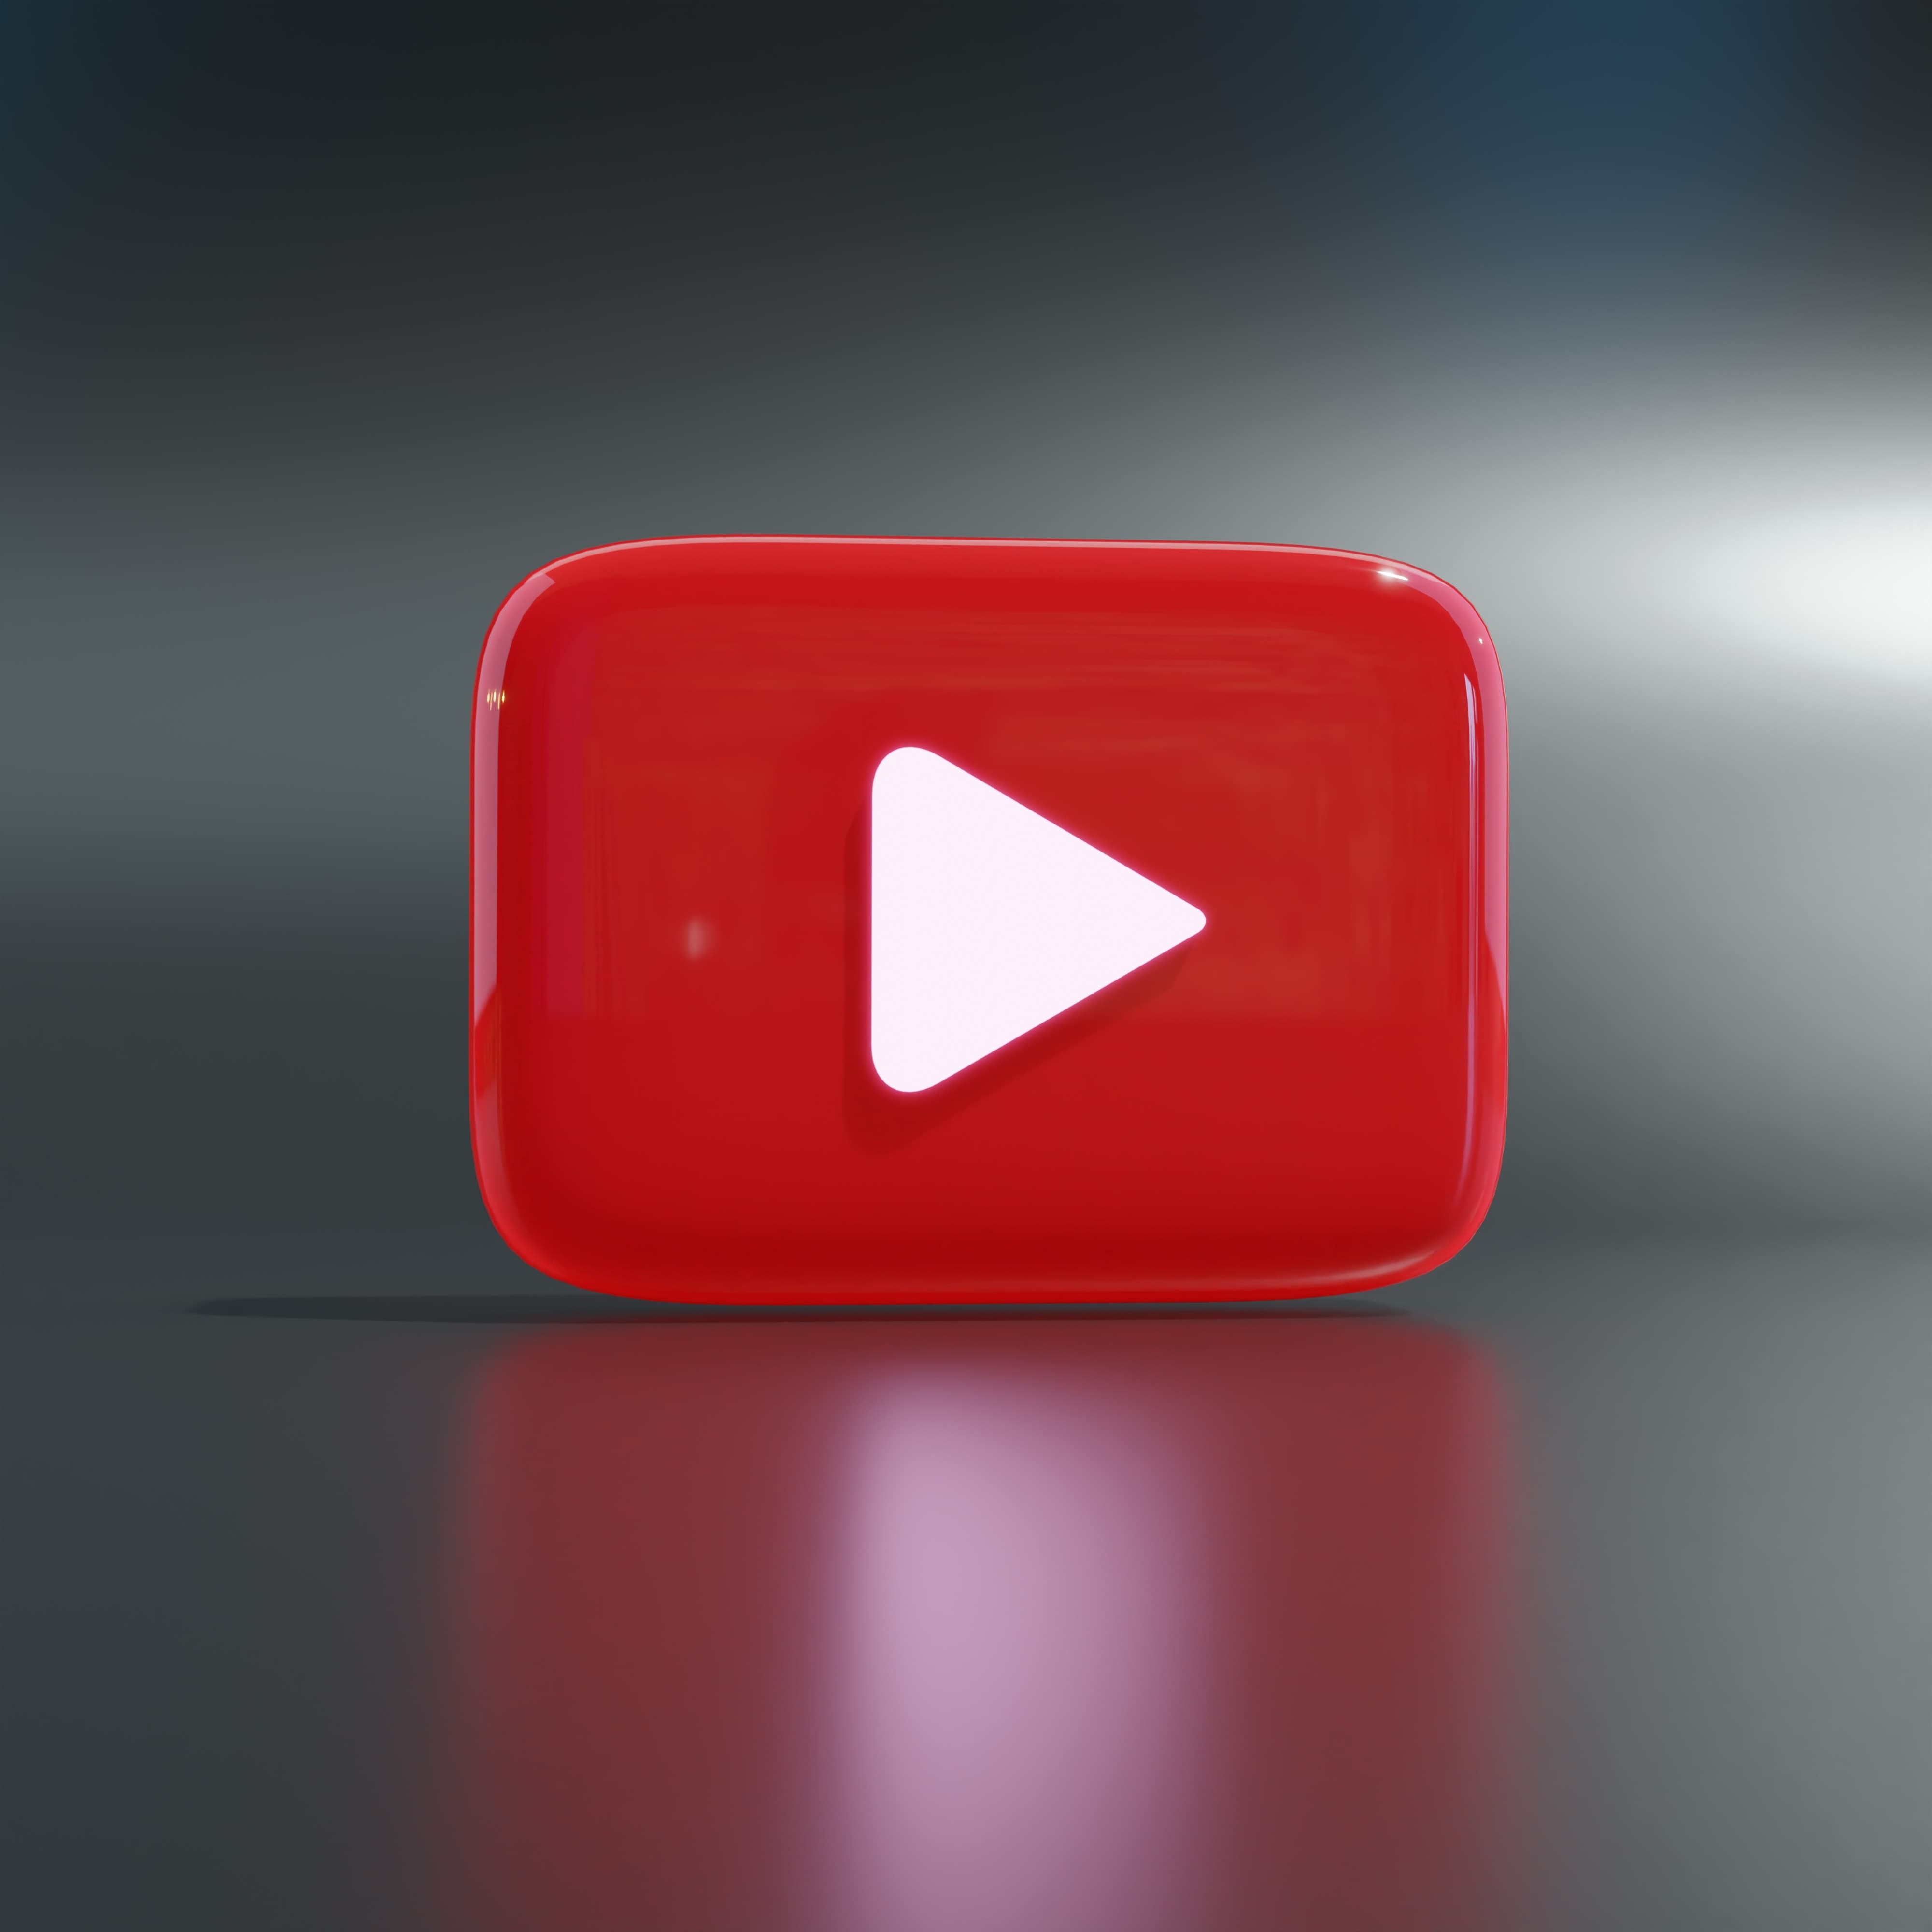 유튜브 채널과 콘텐츠 기획 성공을 위한 첫 걸음